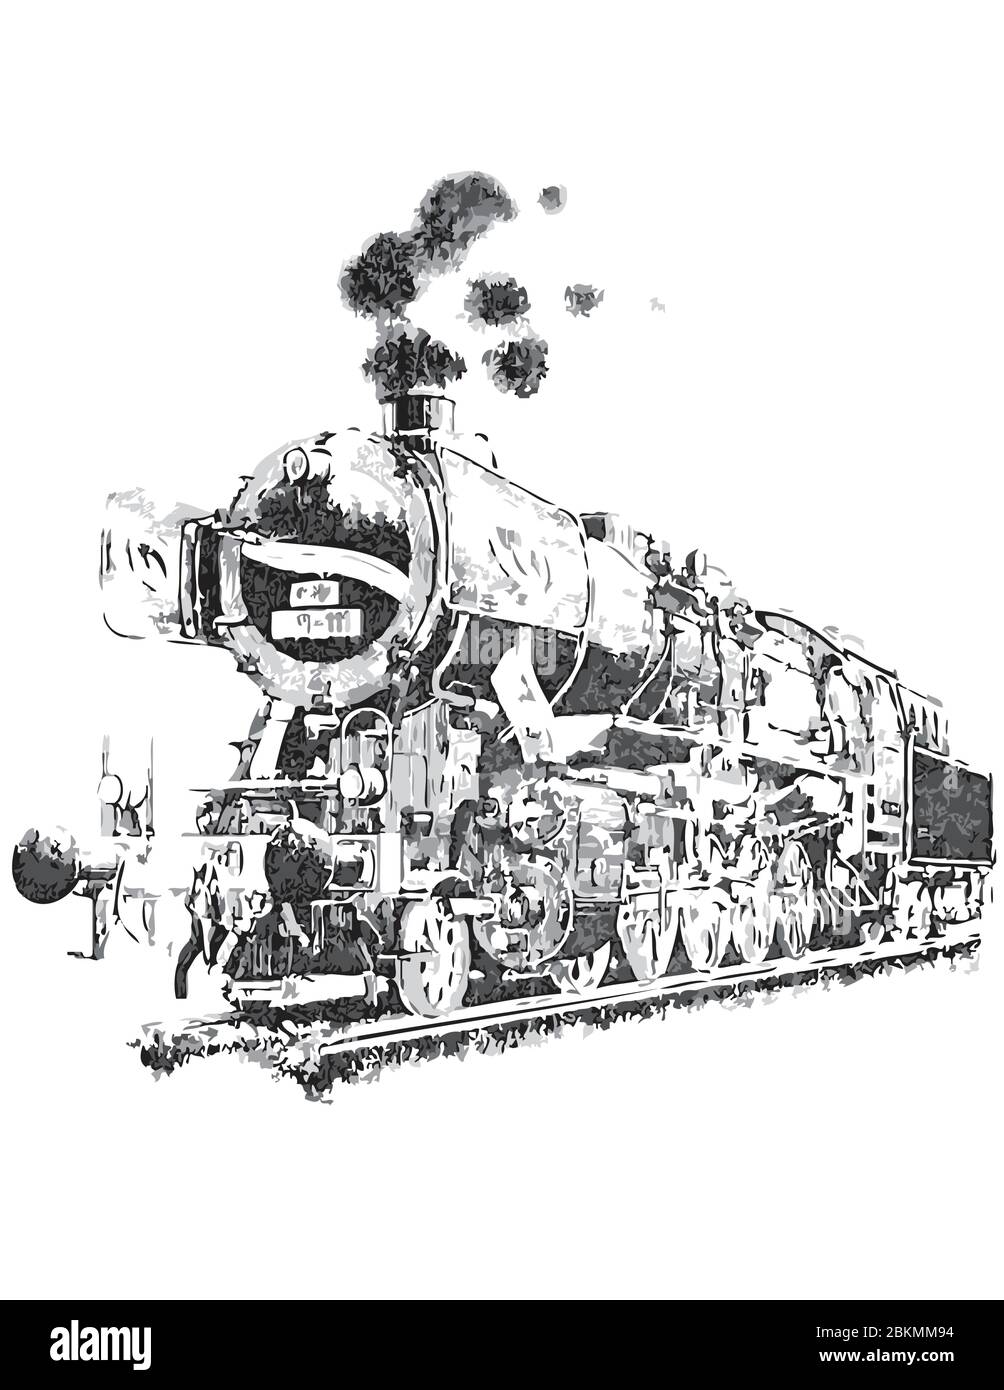 Zeichnung in der Tapfere weiß, grau und schwarz. Dampflokomotive auf Eisenbahnschienen Stock Vektor